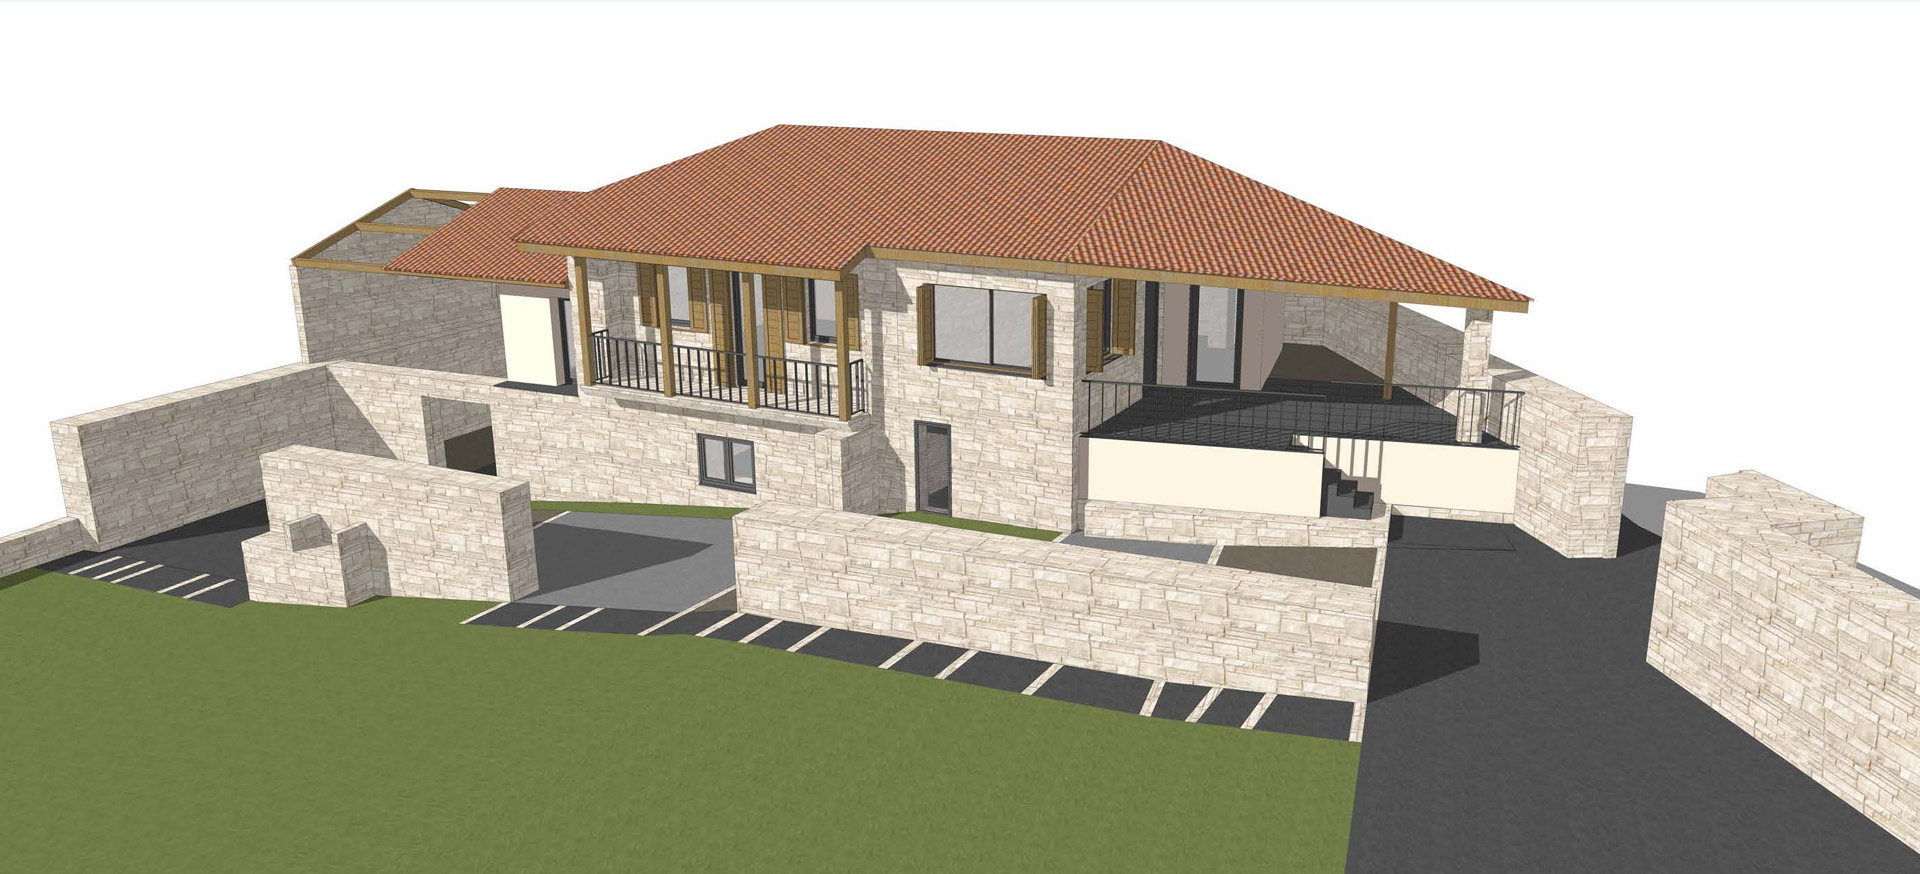 Casa NI - Imagen 3D fachada y jardín